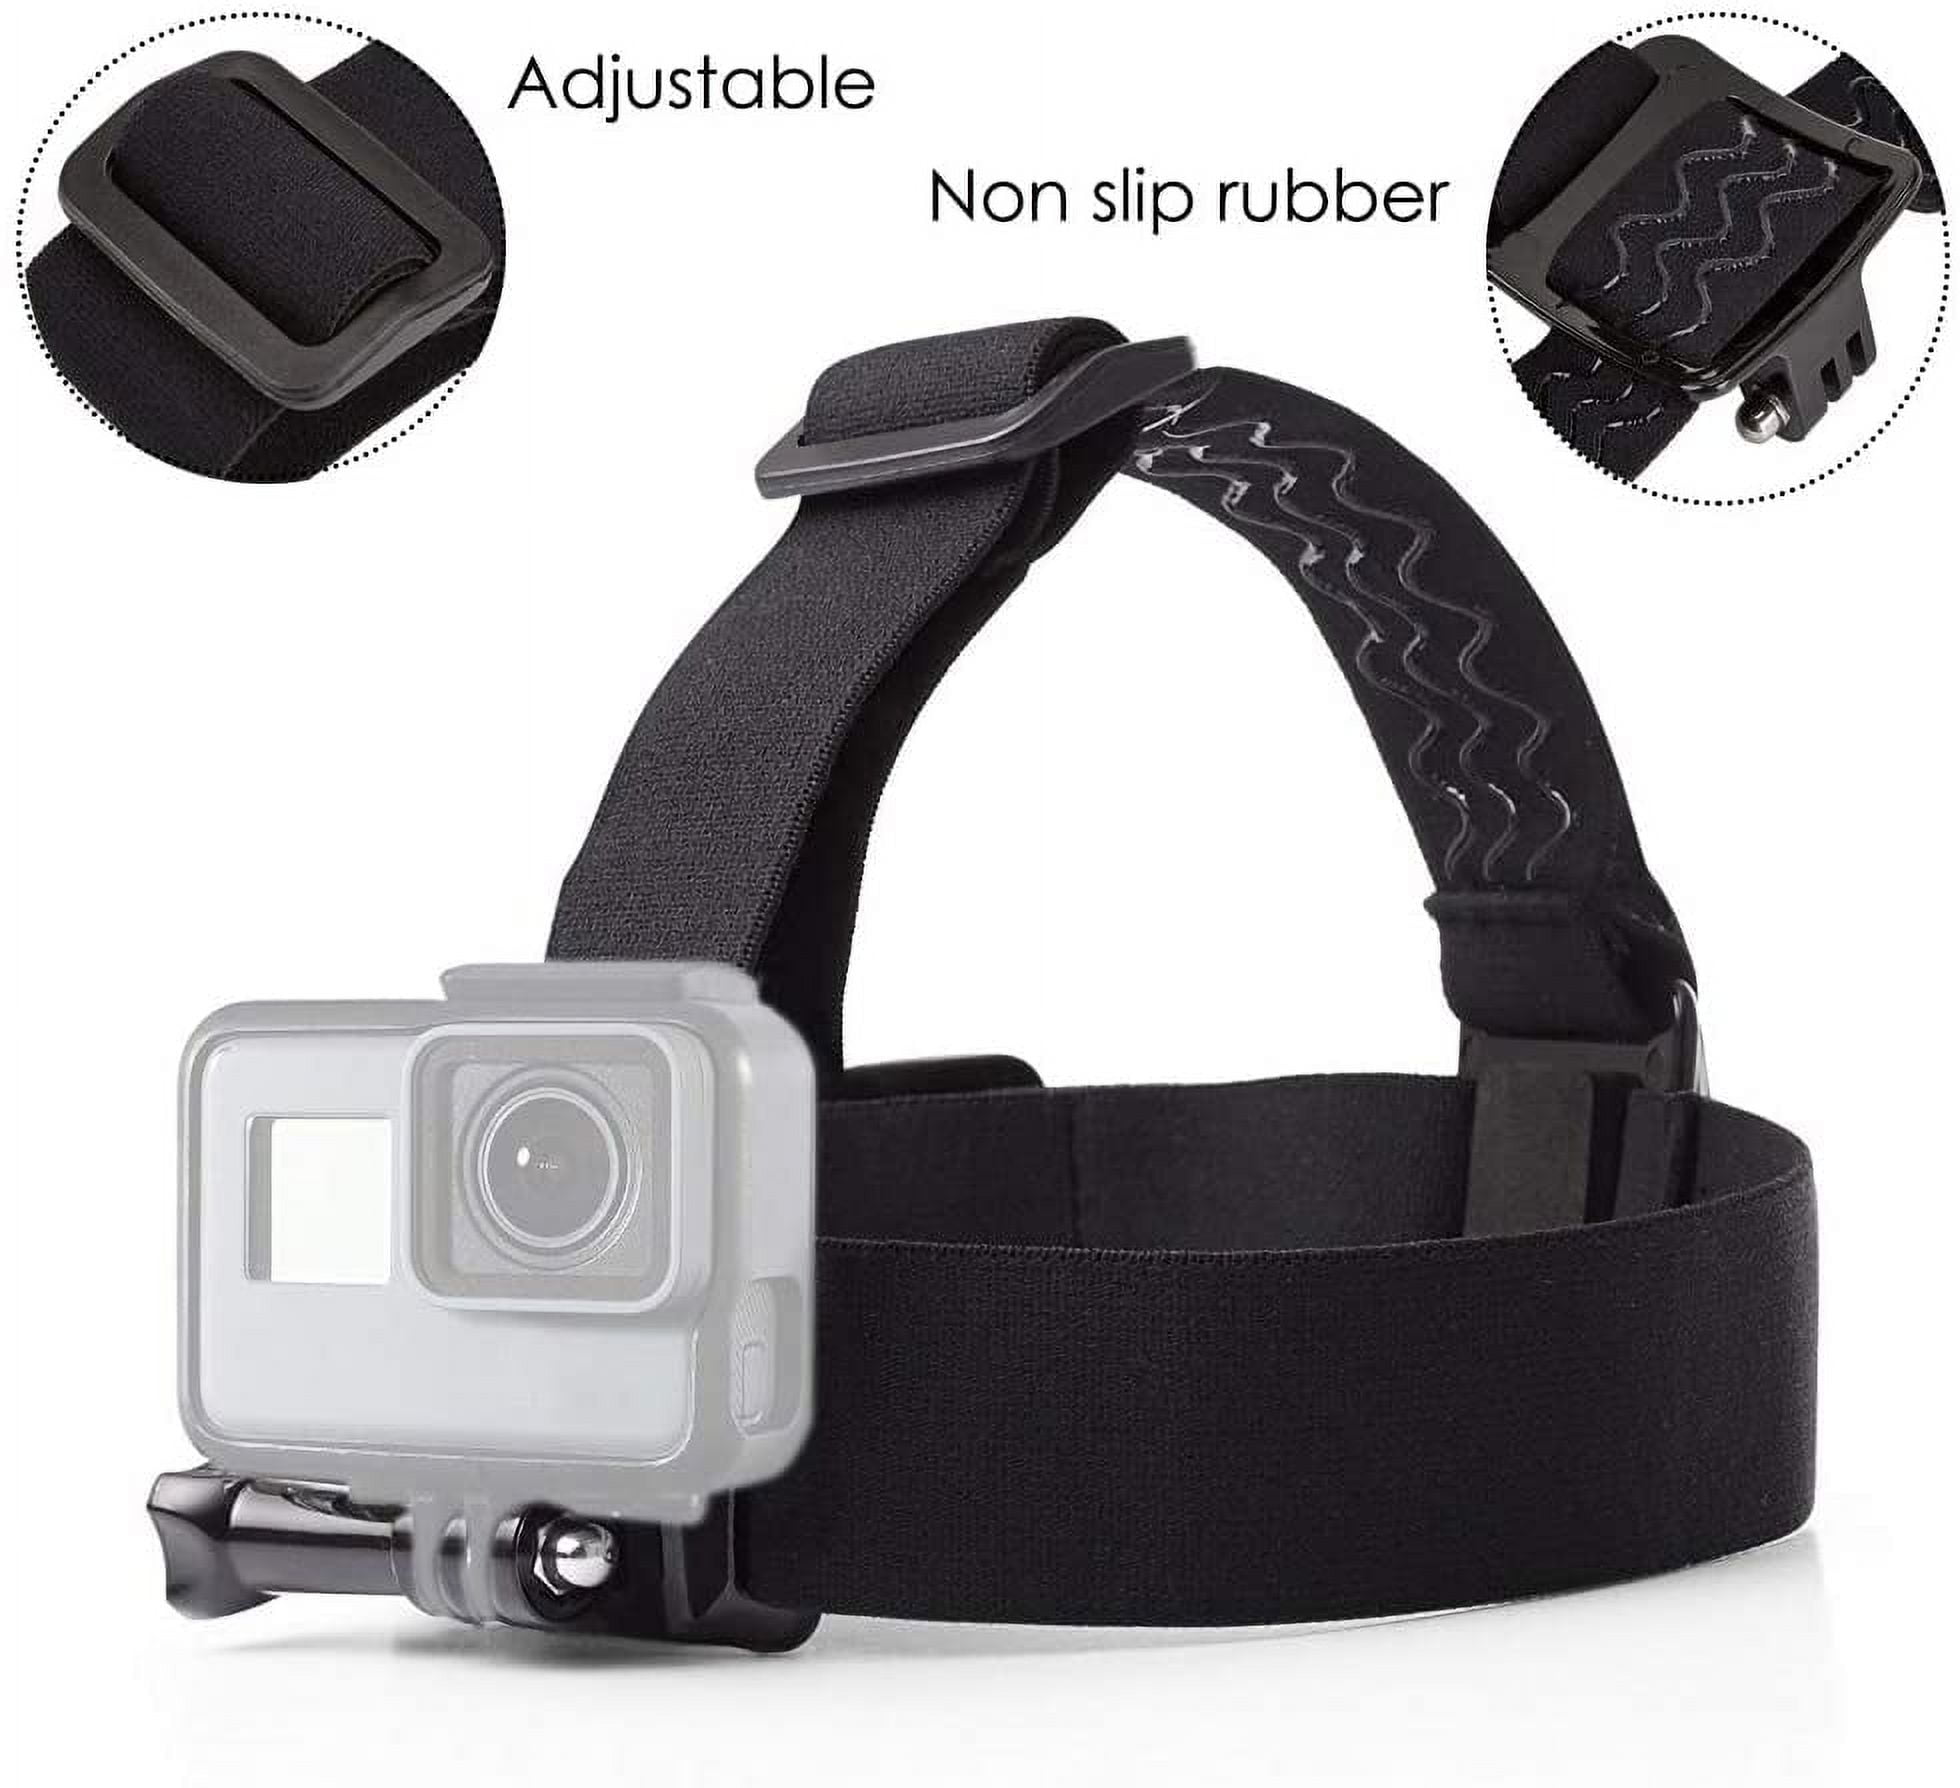 AKASO Outdoor Sports Action Camera Accessories Kit 7 in 1 for AKASO EK7000/  EK7000 Pro/ Brave 4/ Brave 7 LE/ Brave 7/ Brave 8/ V50X/ V50 Pro/ V50 Elite/Go  Pro Hero 9